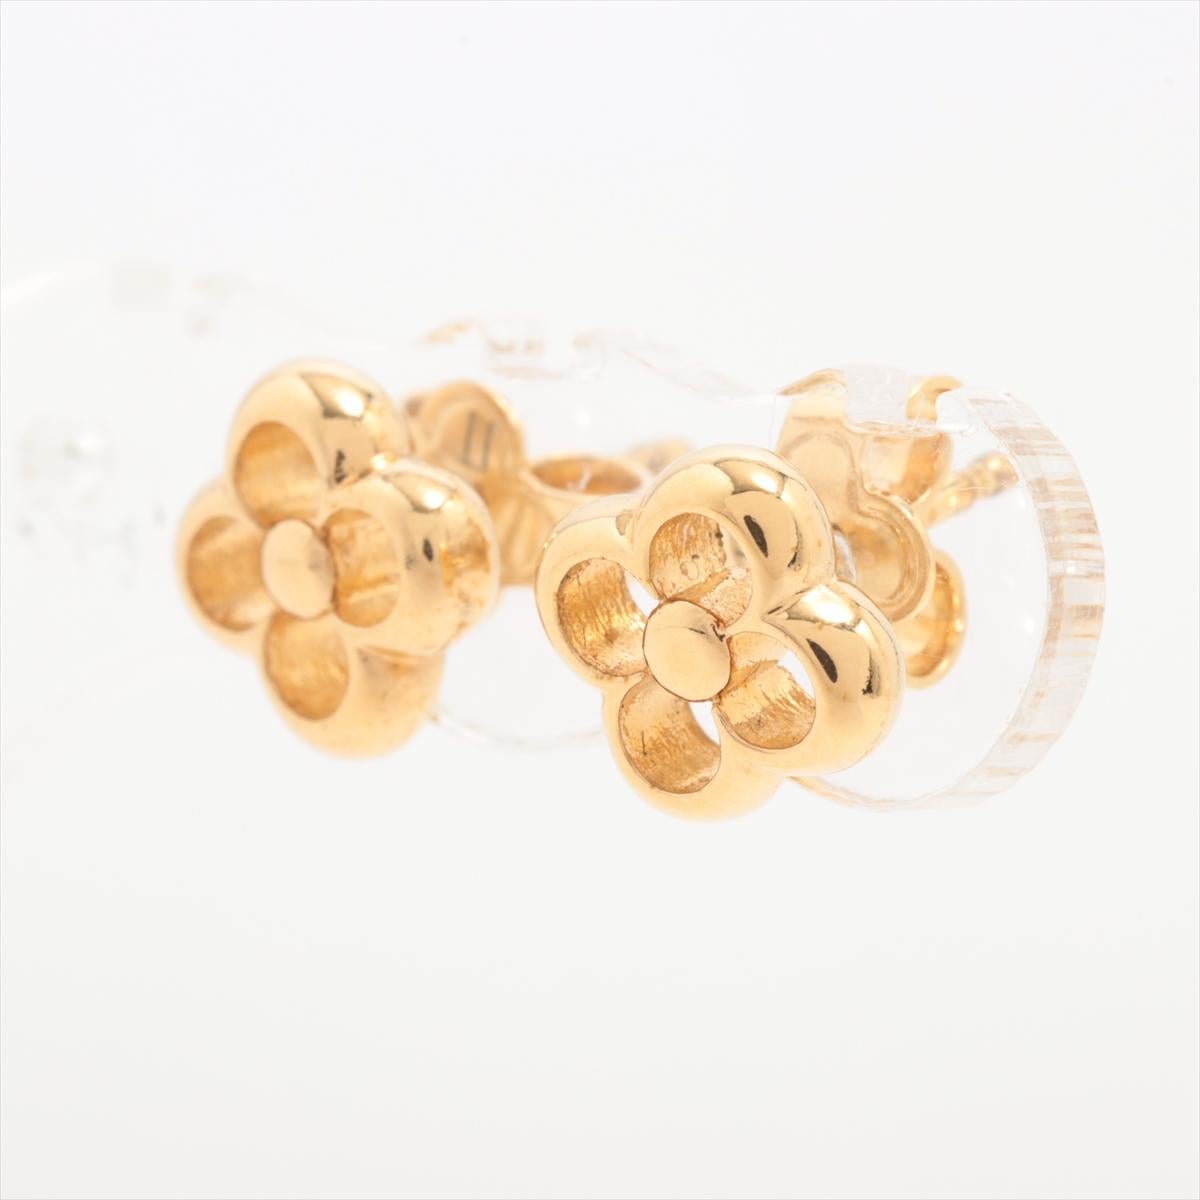 Der Louis Vuitton Flower Full Metal Stud Earring in Gold ist ein schillerndes Accessoire, das die für die Marke typische Mischung aus Luxus und zeitlosem Design verkörpert. Der Ohrring besteht aus einem zarten, aber filigranen Blumenmotiv, das